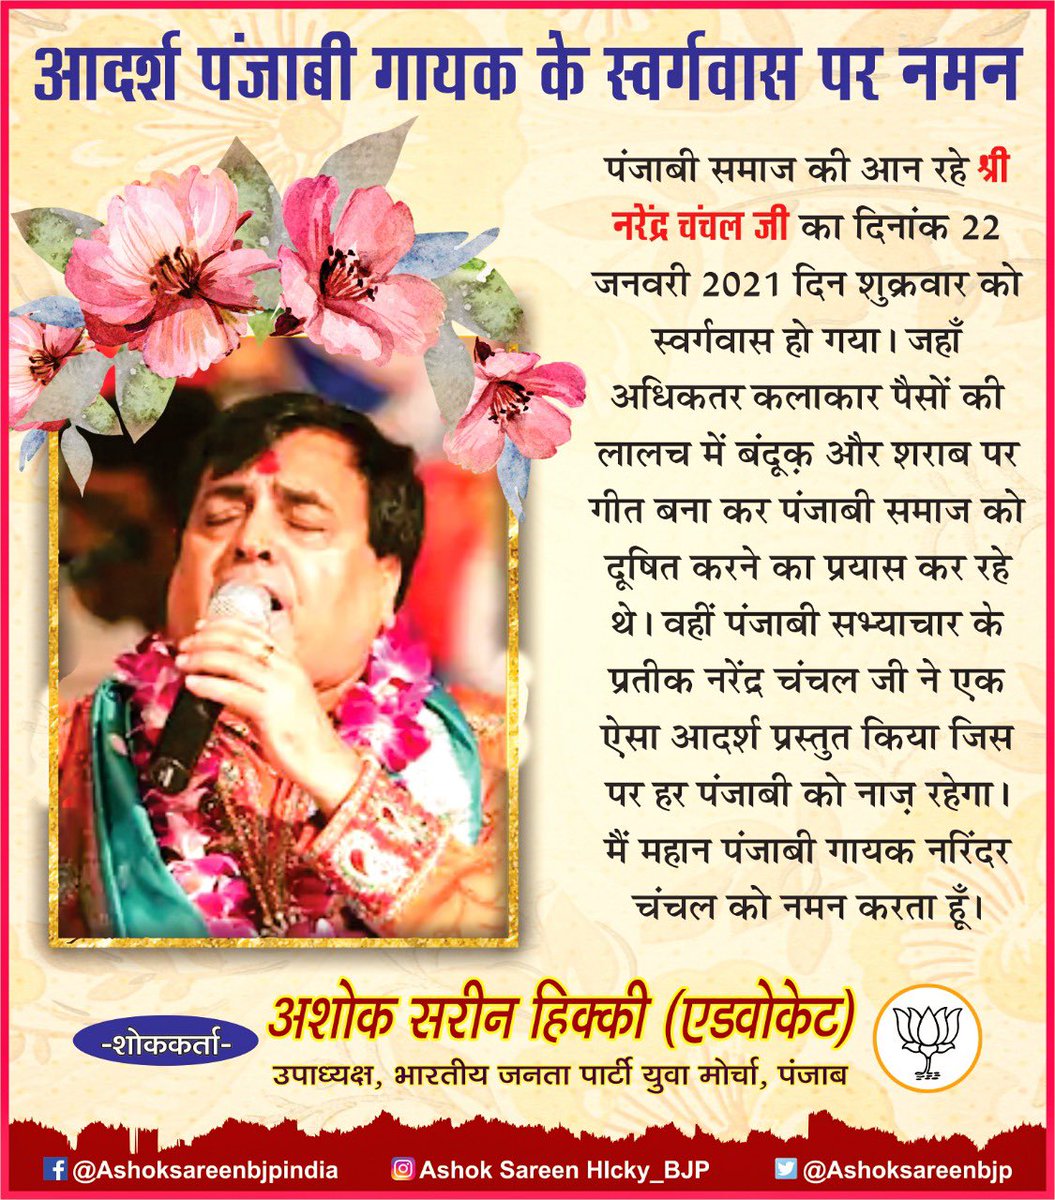 प्रसिद पंजाबी गायक #NarendraChanchal जी के स्वर्गवास पर हर पंजाबी को दुःख हुआ।भगवान उनकी आत्मा को शांति दे।